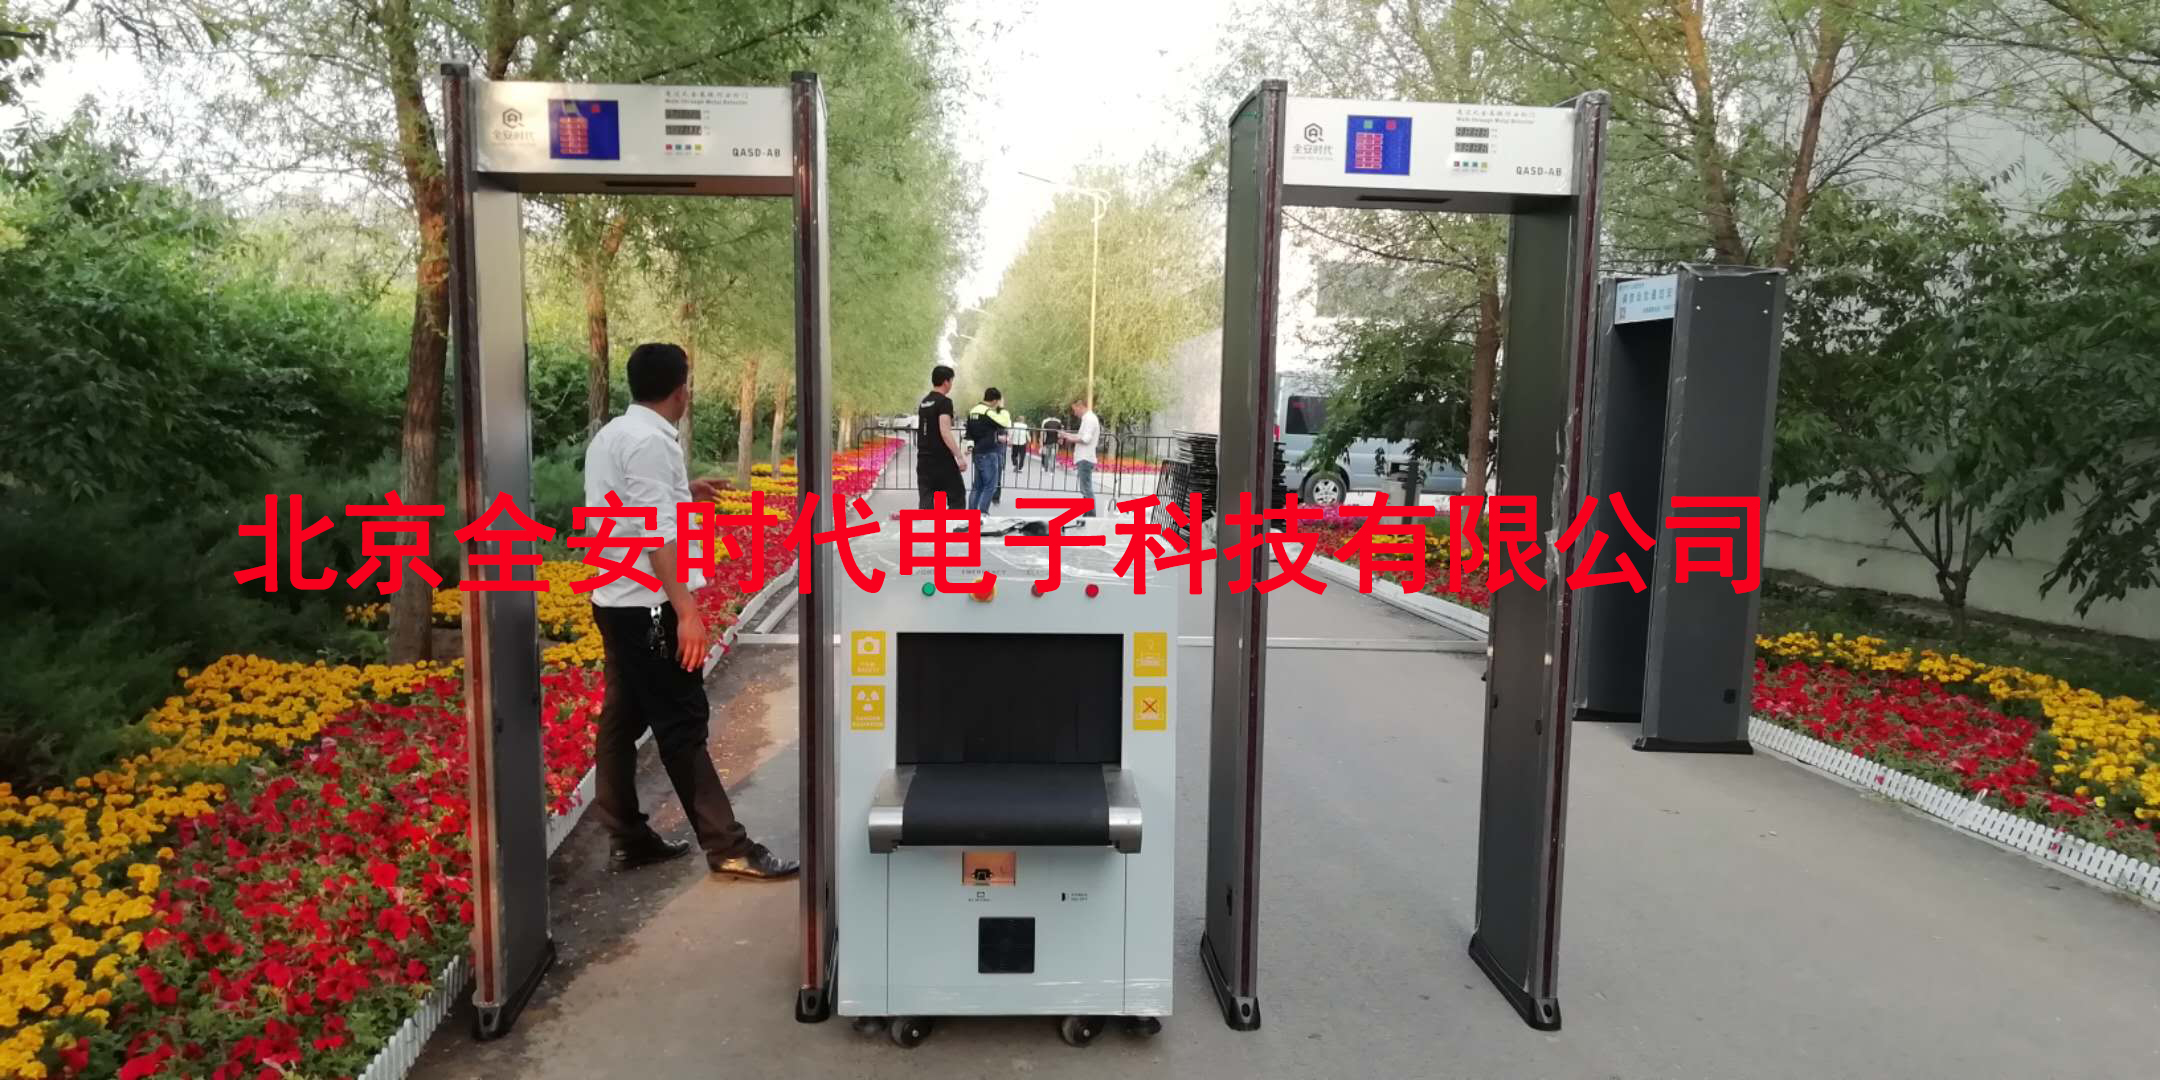 北京租赁安检机测温安检门安检设备图片